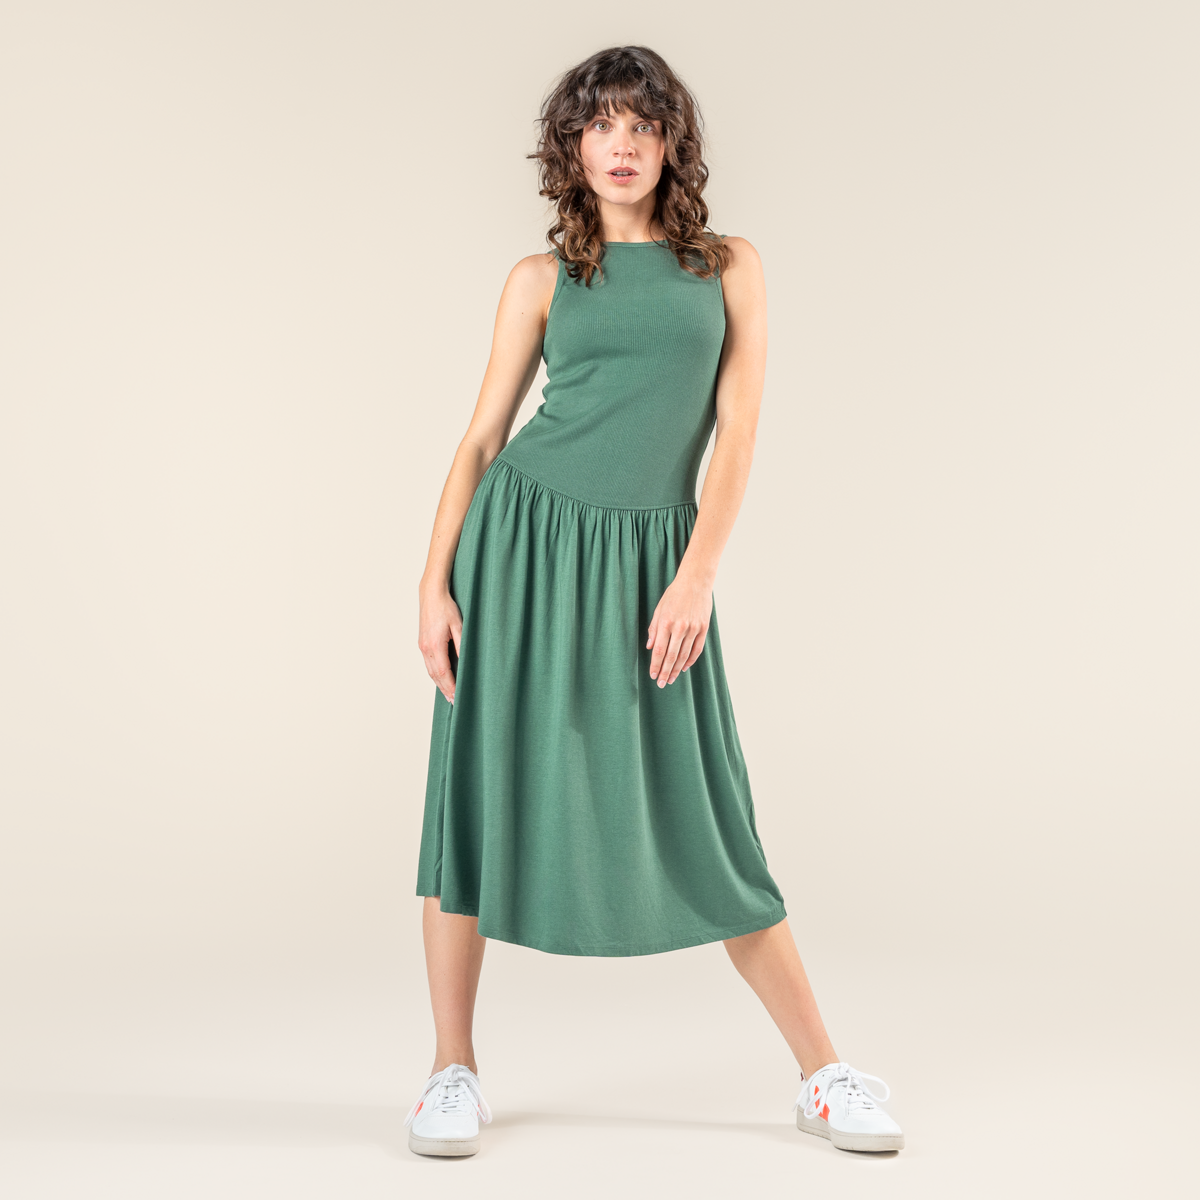 Grün Damen Kleid